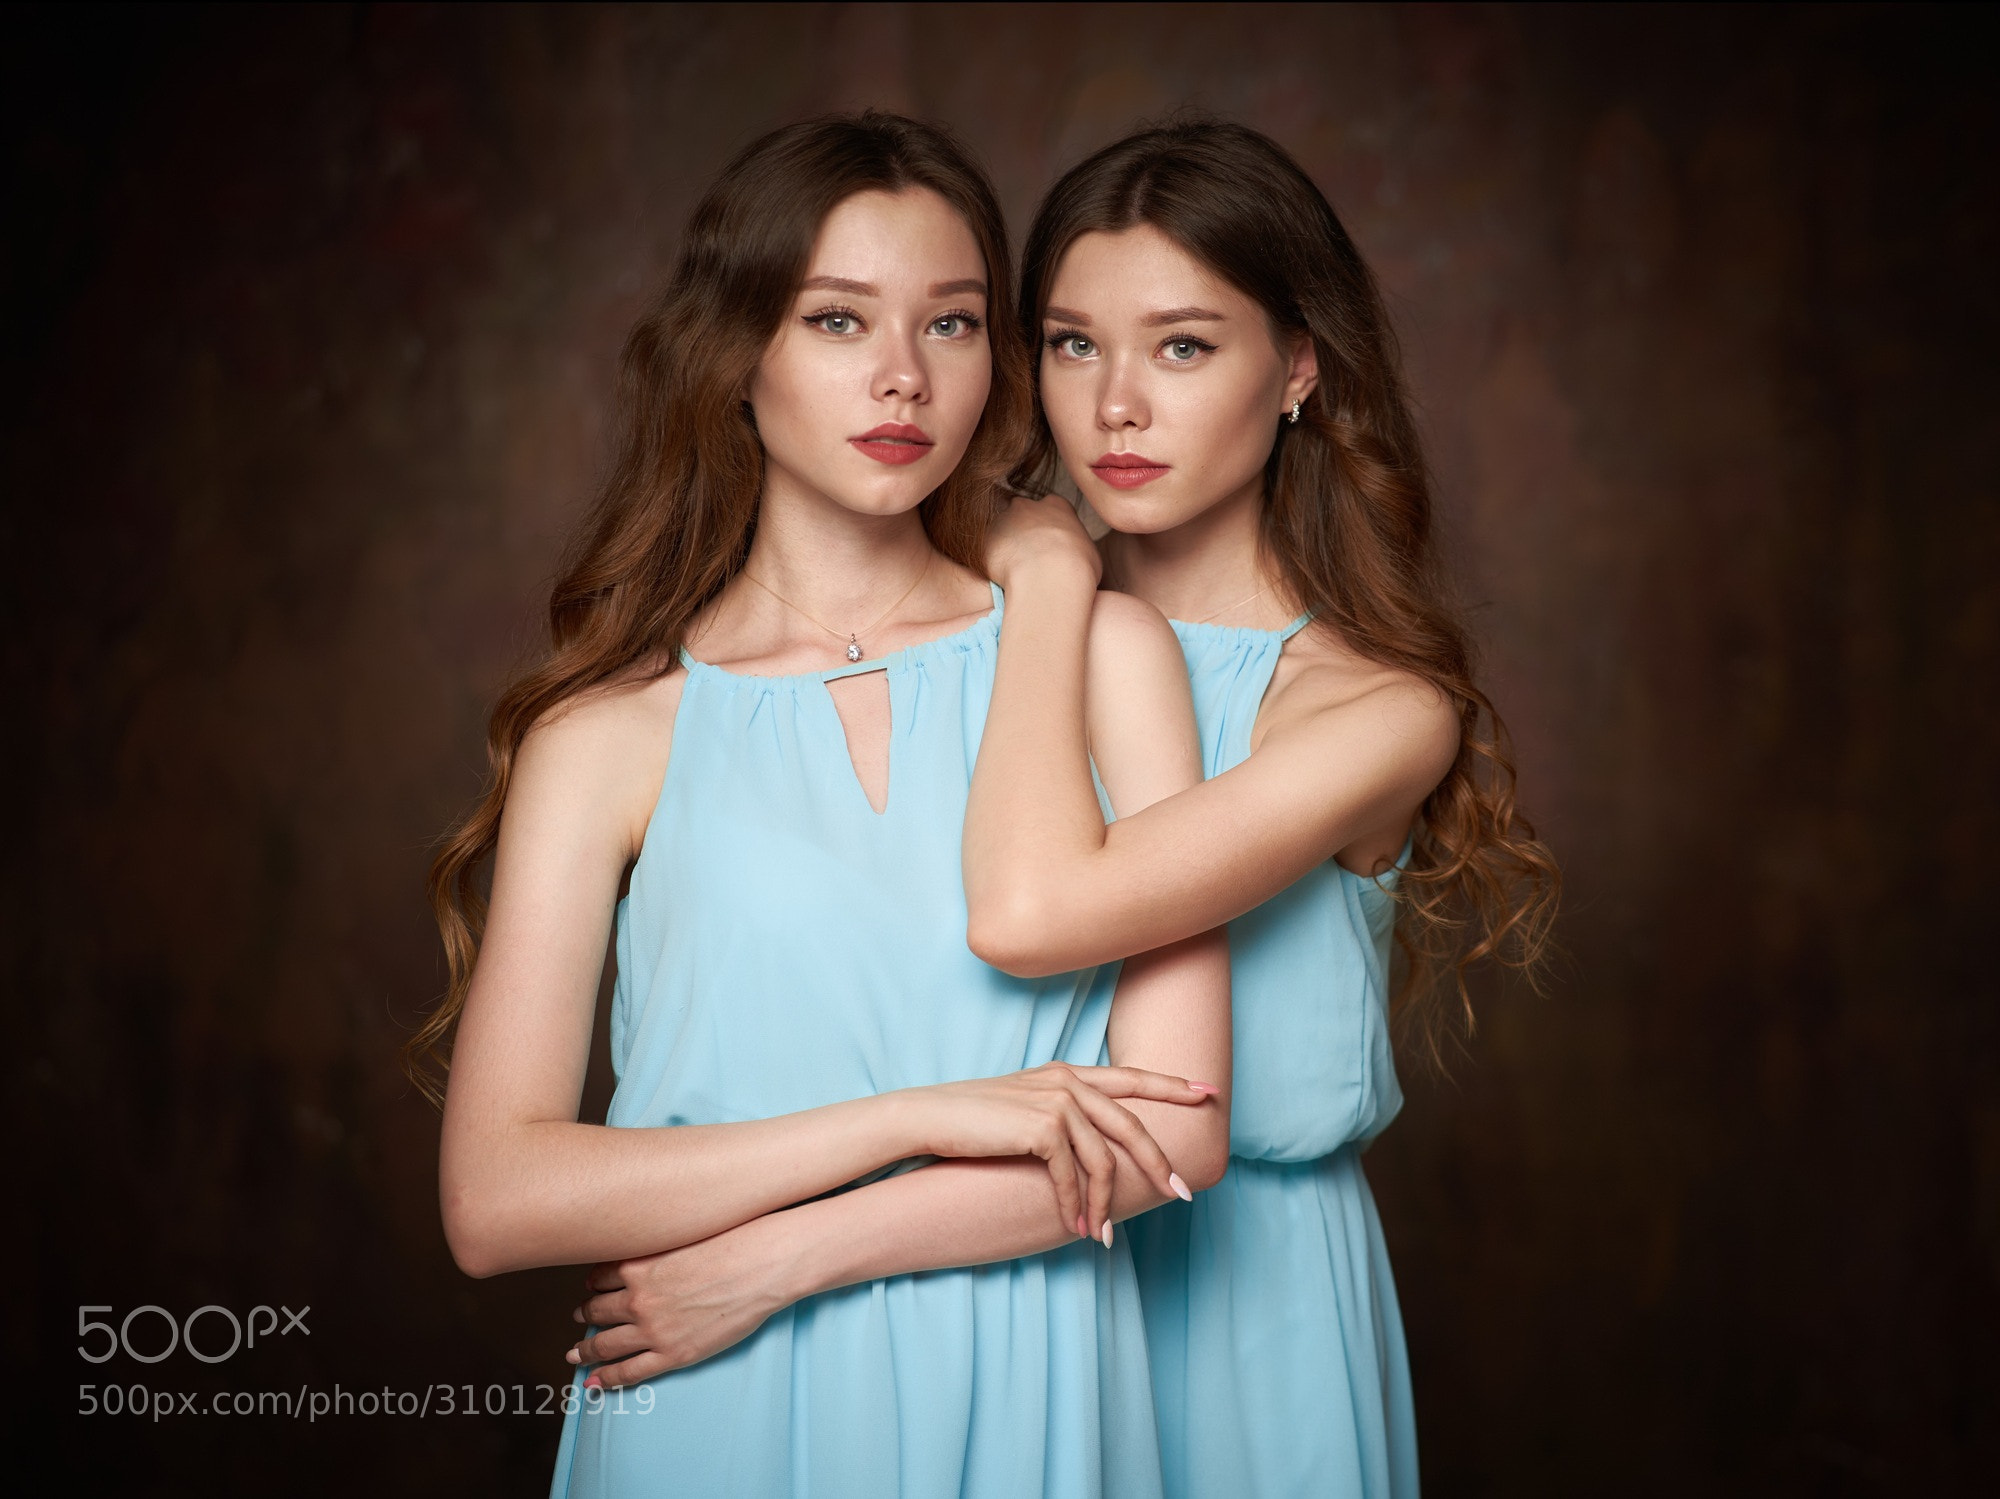 New On 500px Twins By Alexander Vinogradov By Alexander Vinogradov